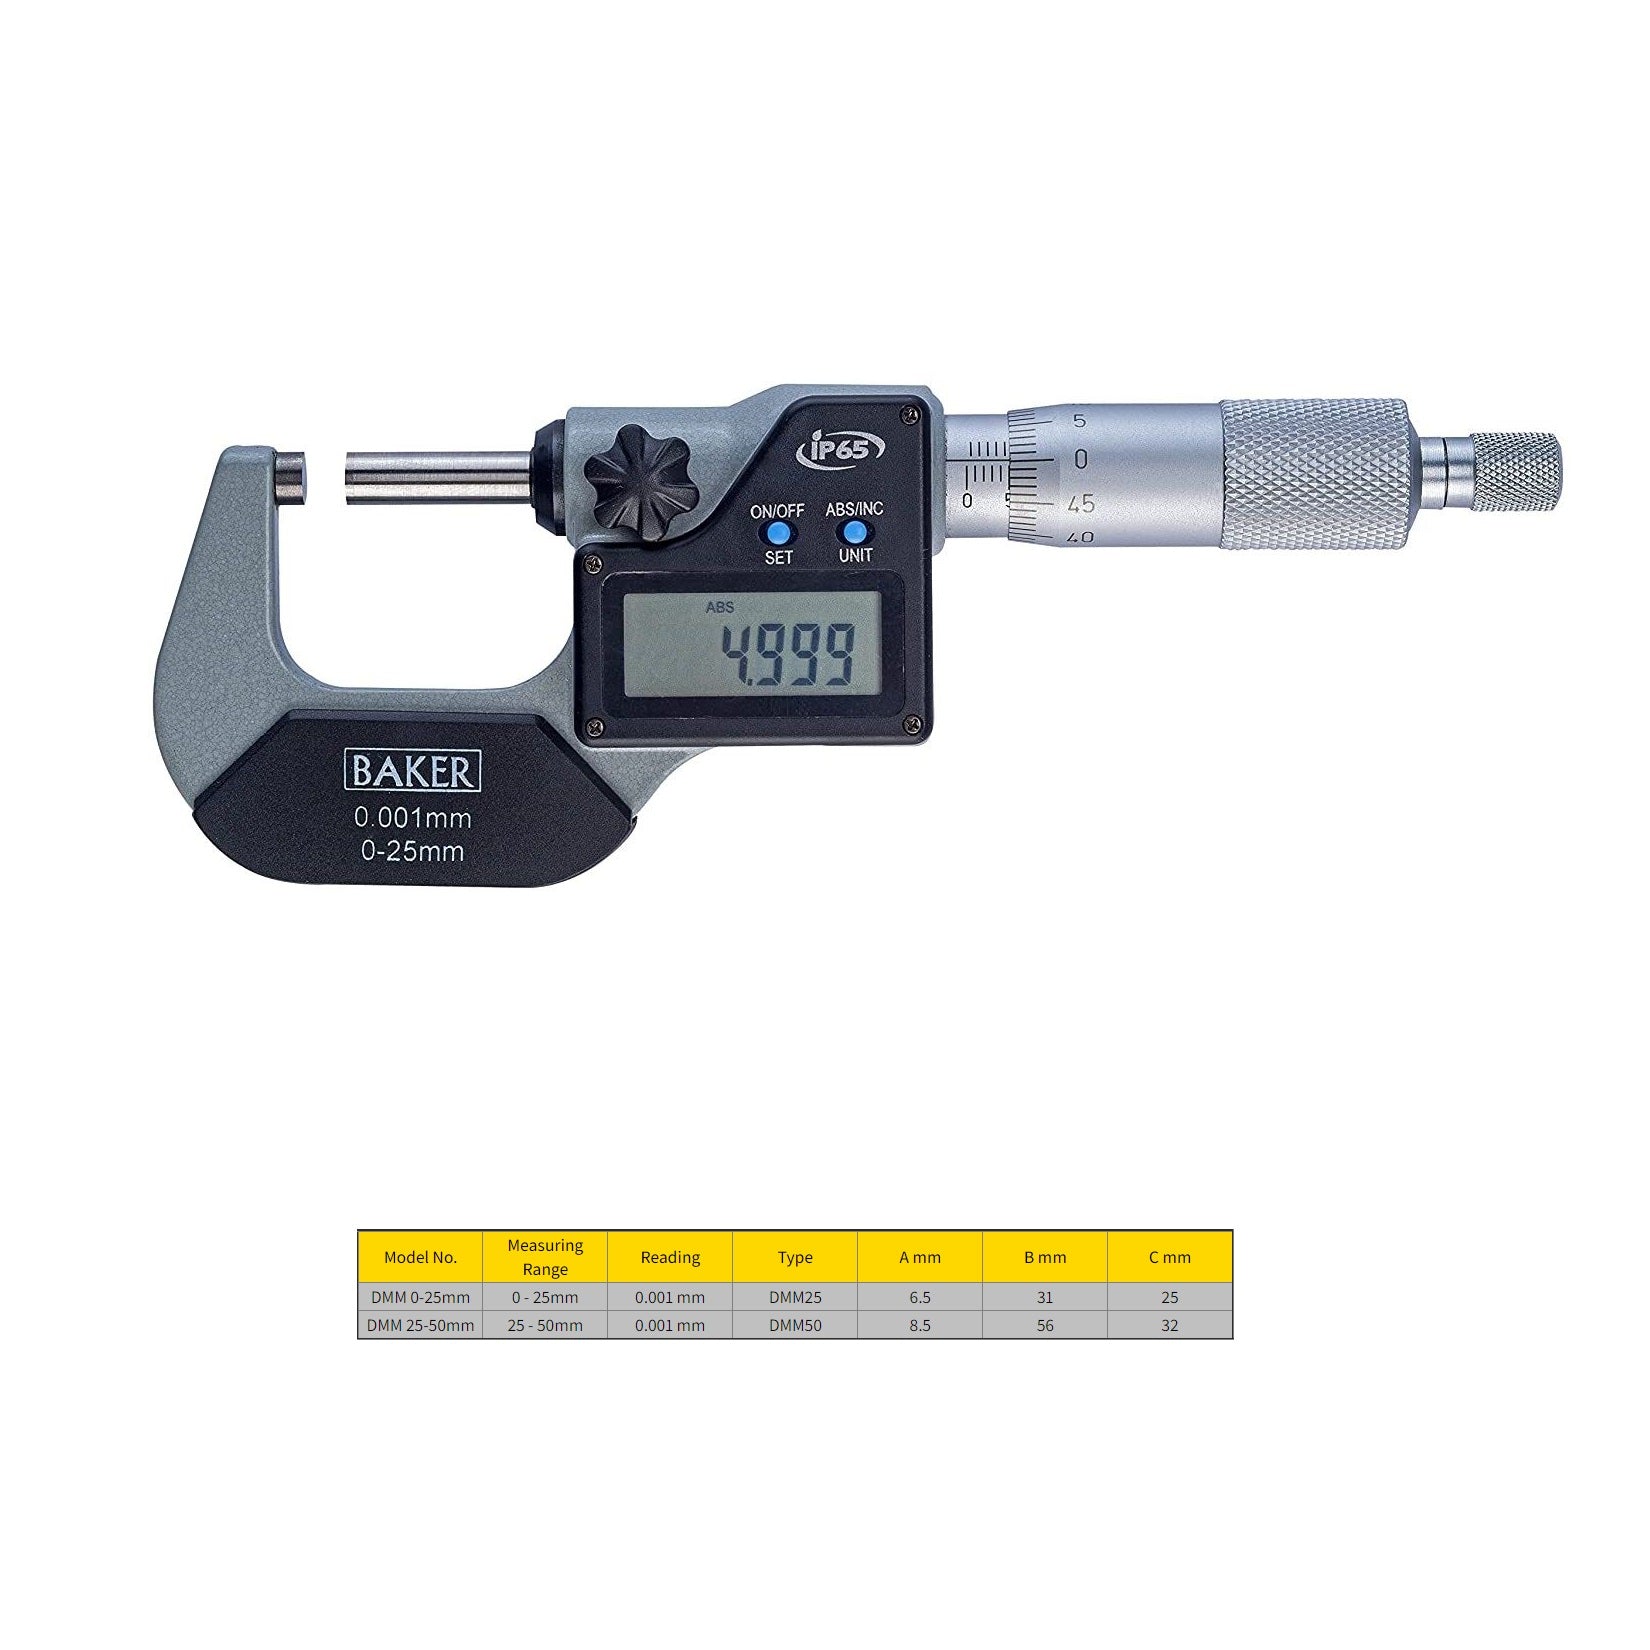 Baker Digital External Micrometer DMM 0-50mm